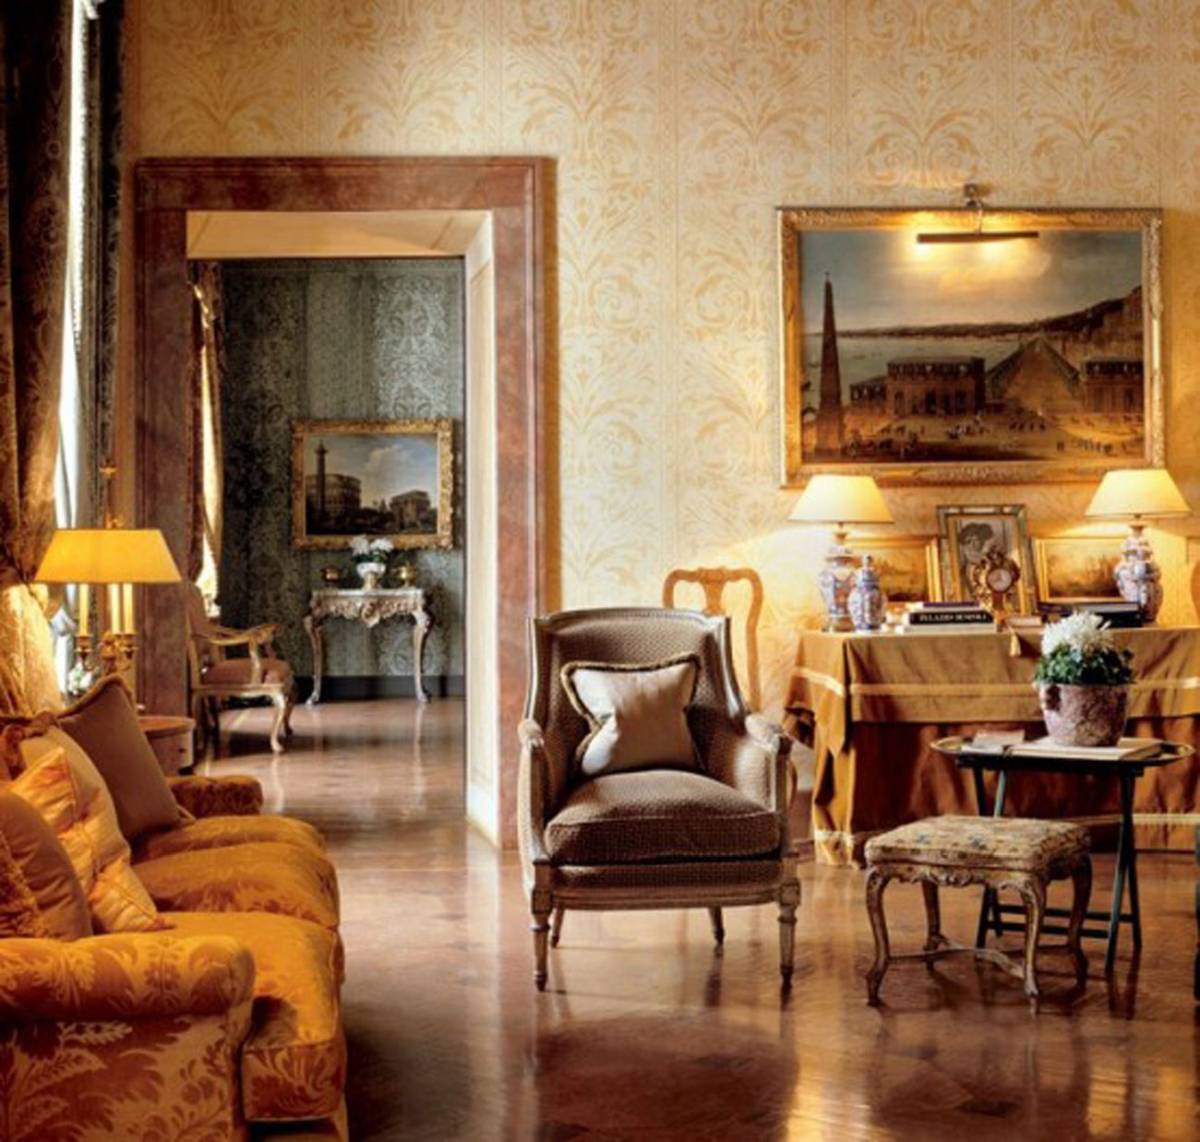 Monarch Apartment Luxurious Interior Design